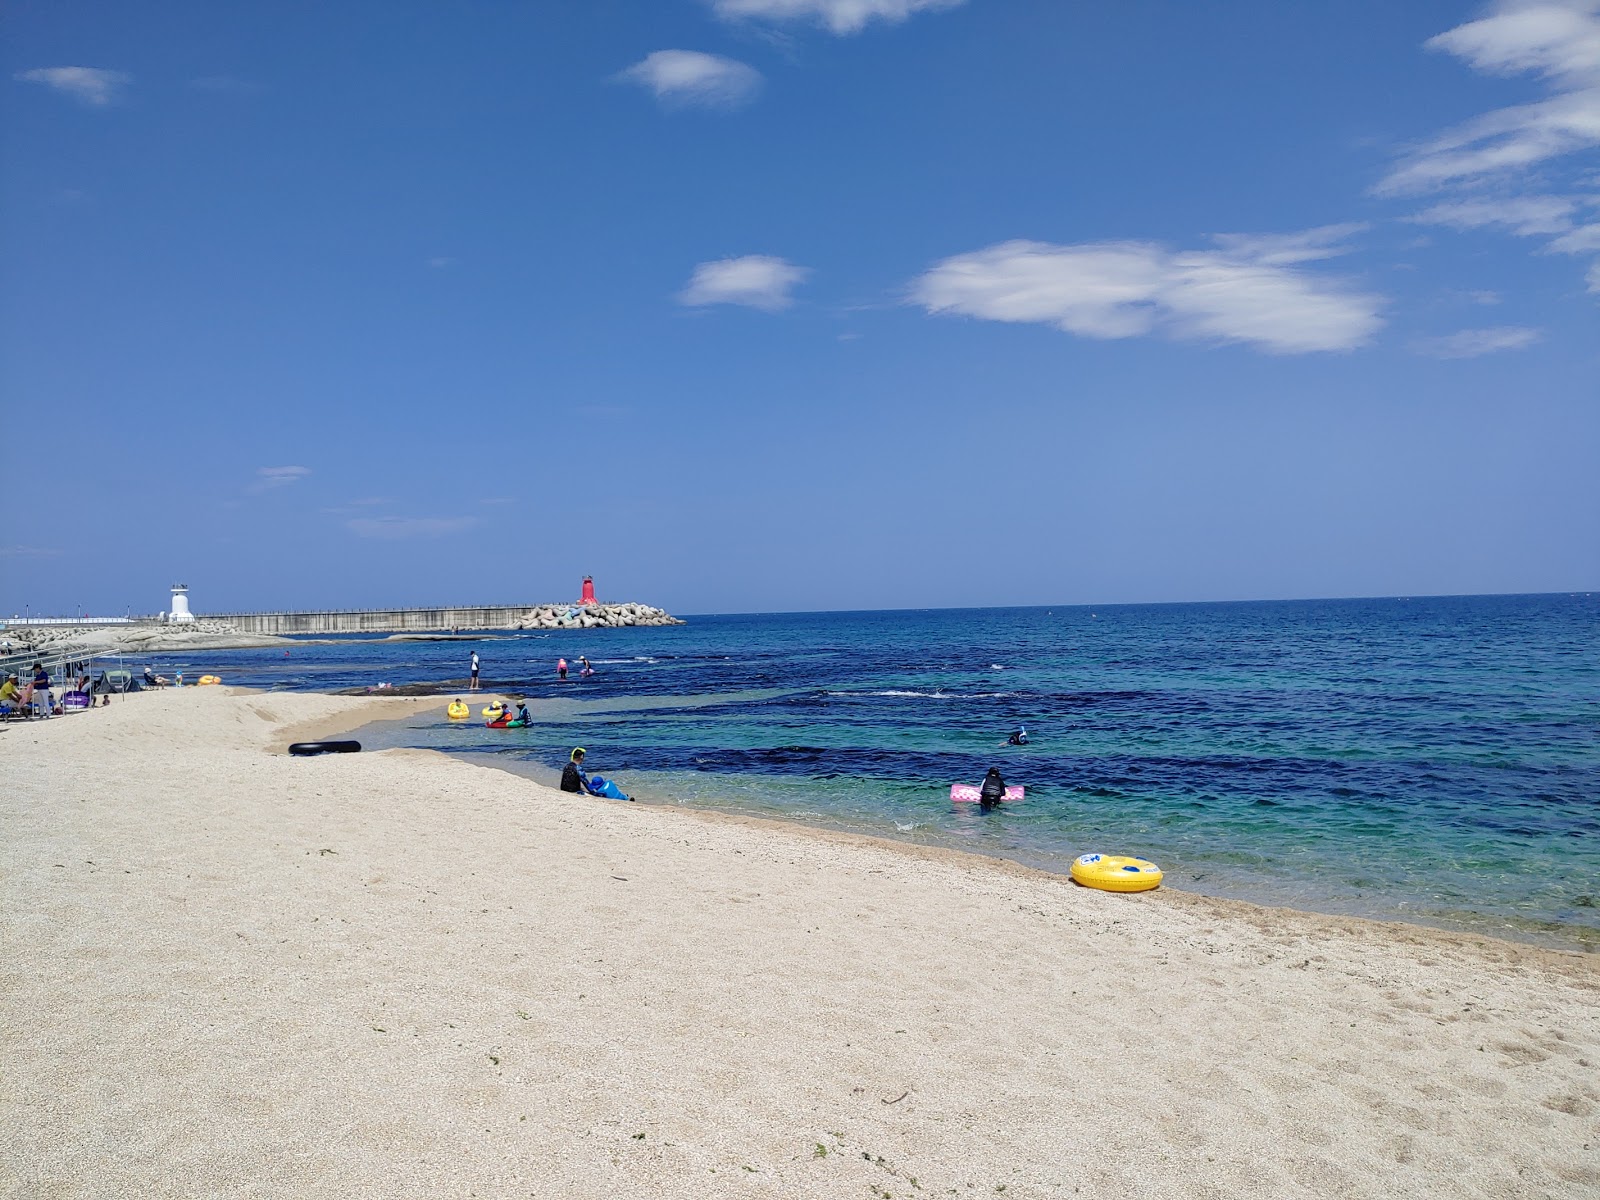 Fotografie cu Cheonggan Beach - locul popular printre cunoscătorii de relaxare